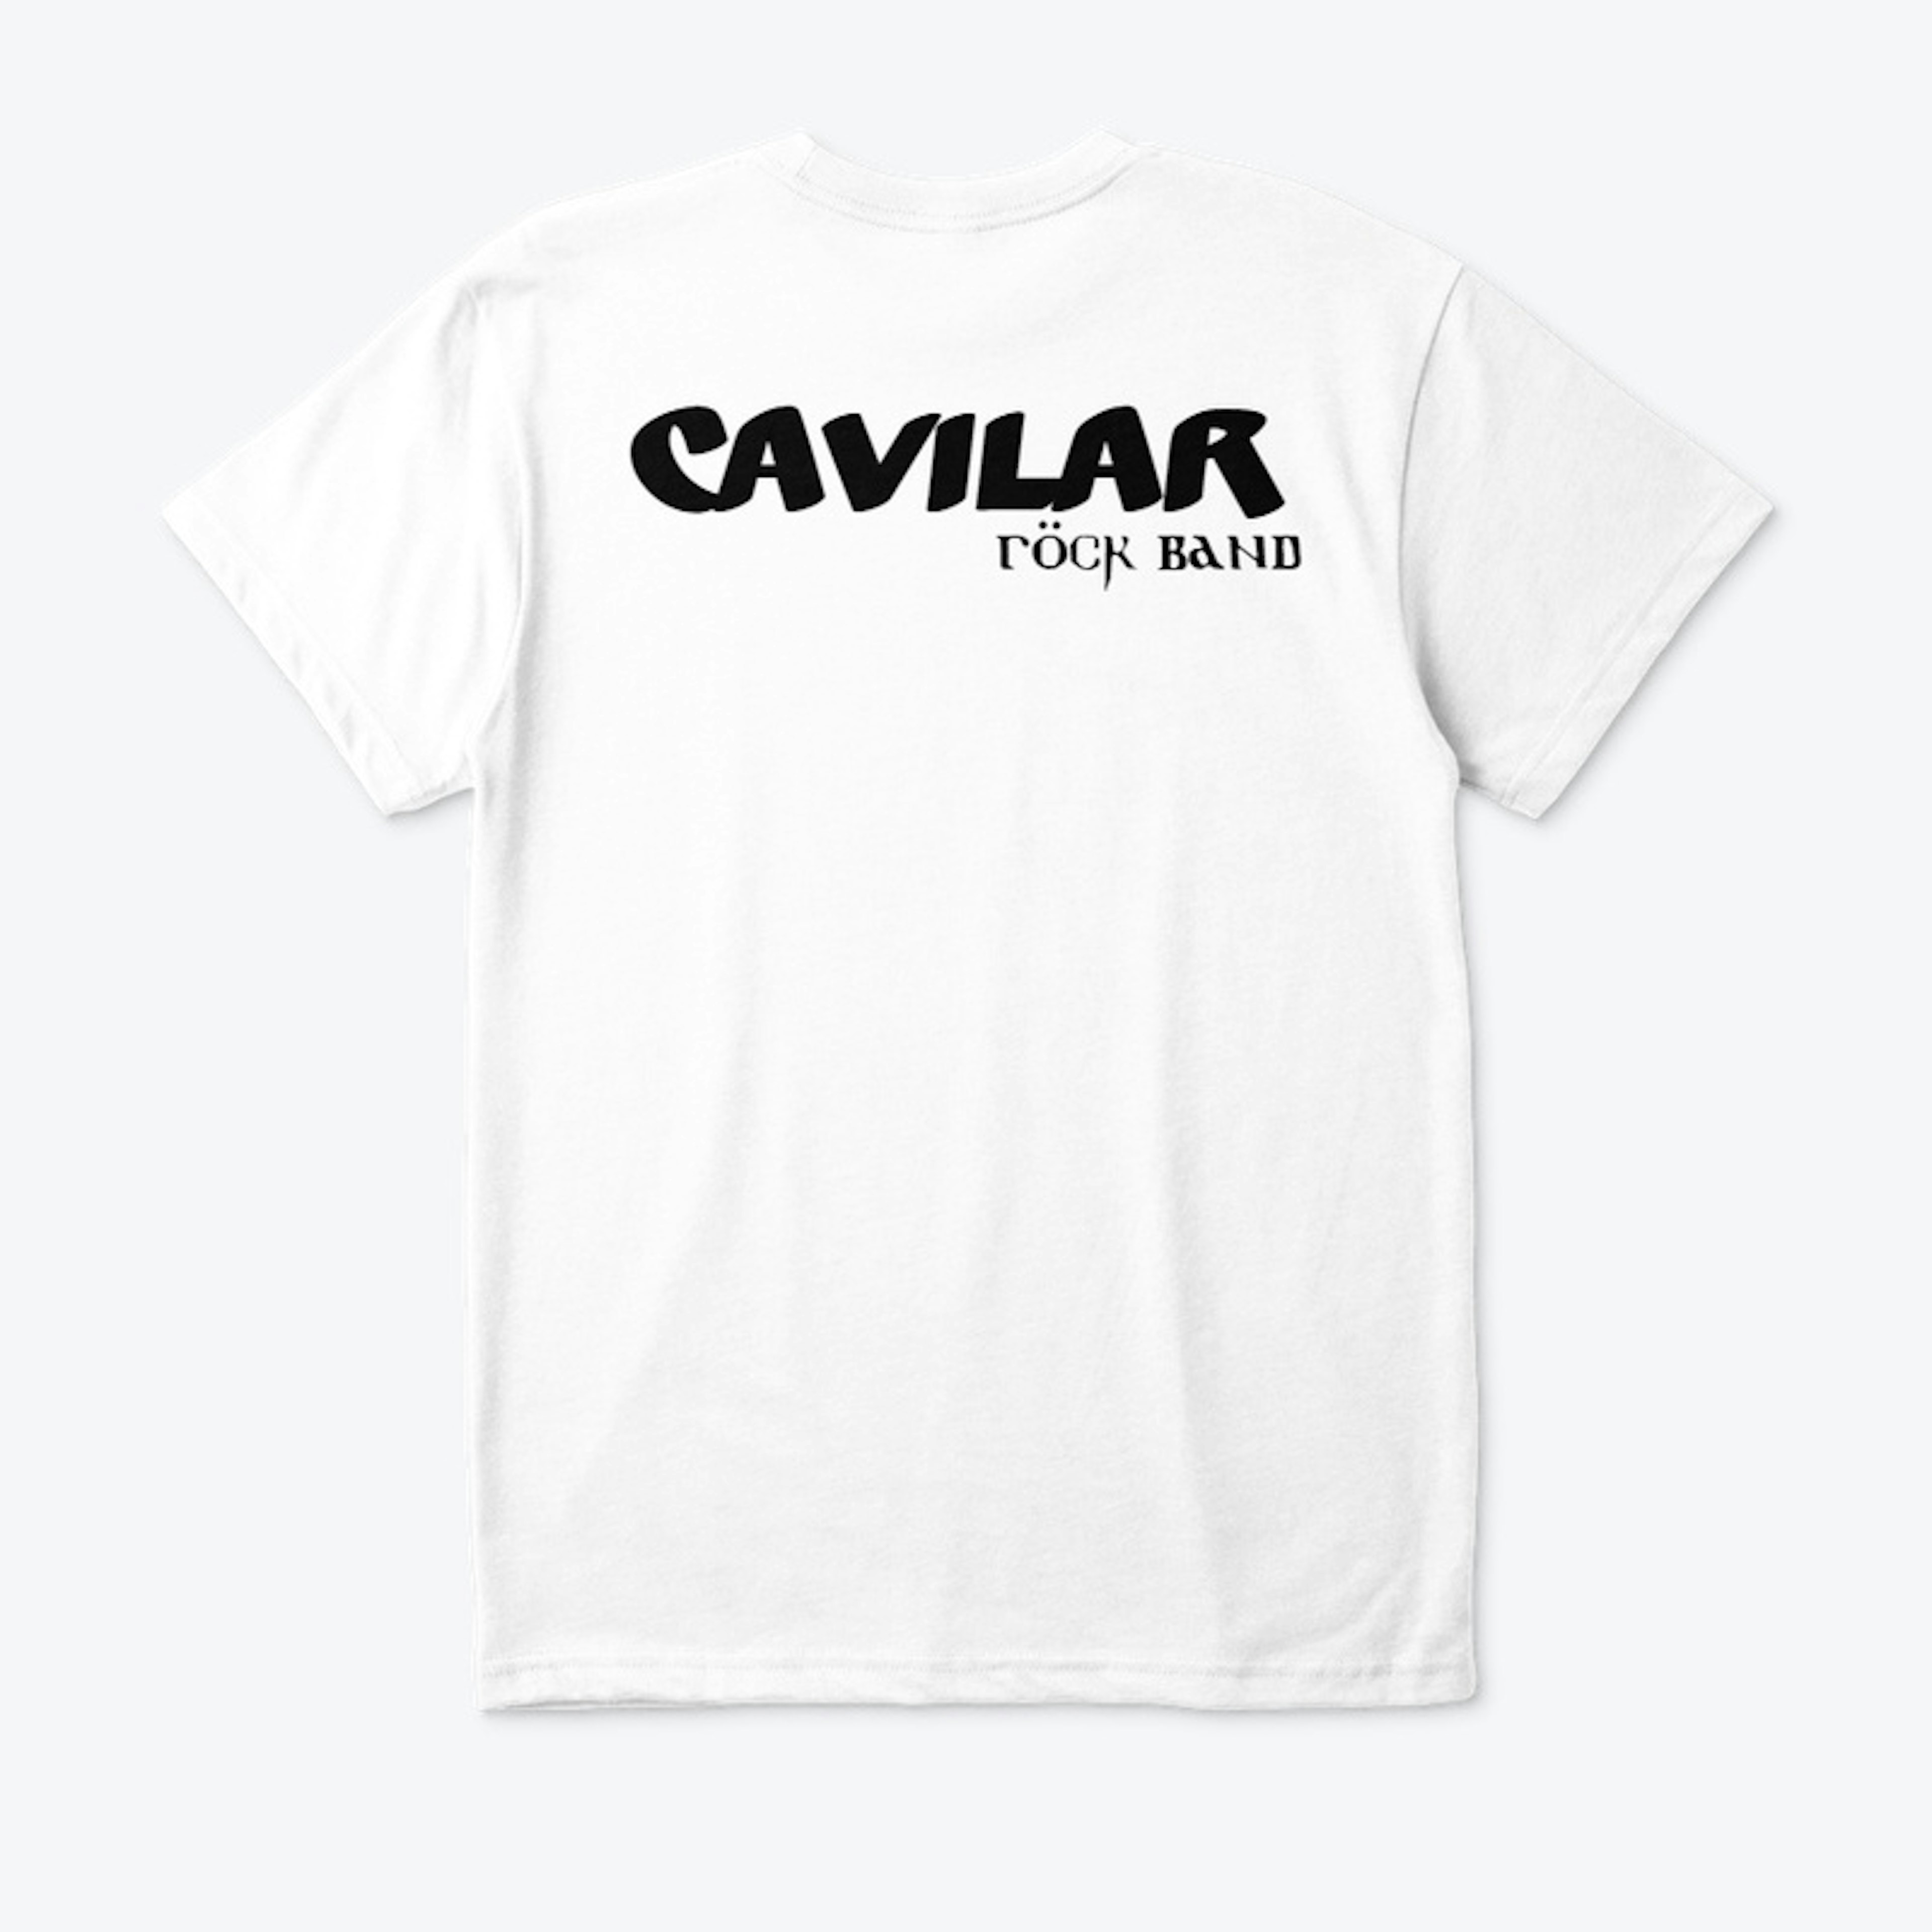 Cavilar Rock Band store